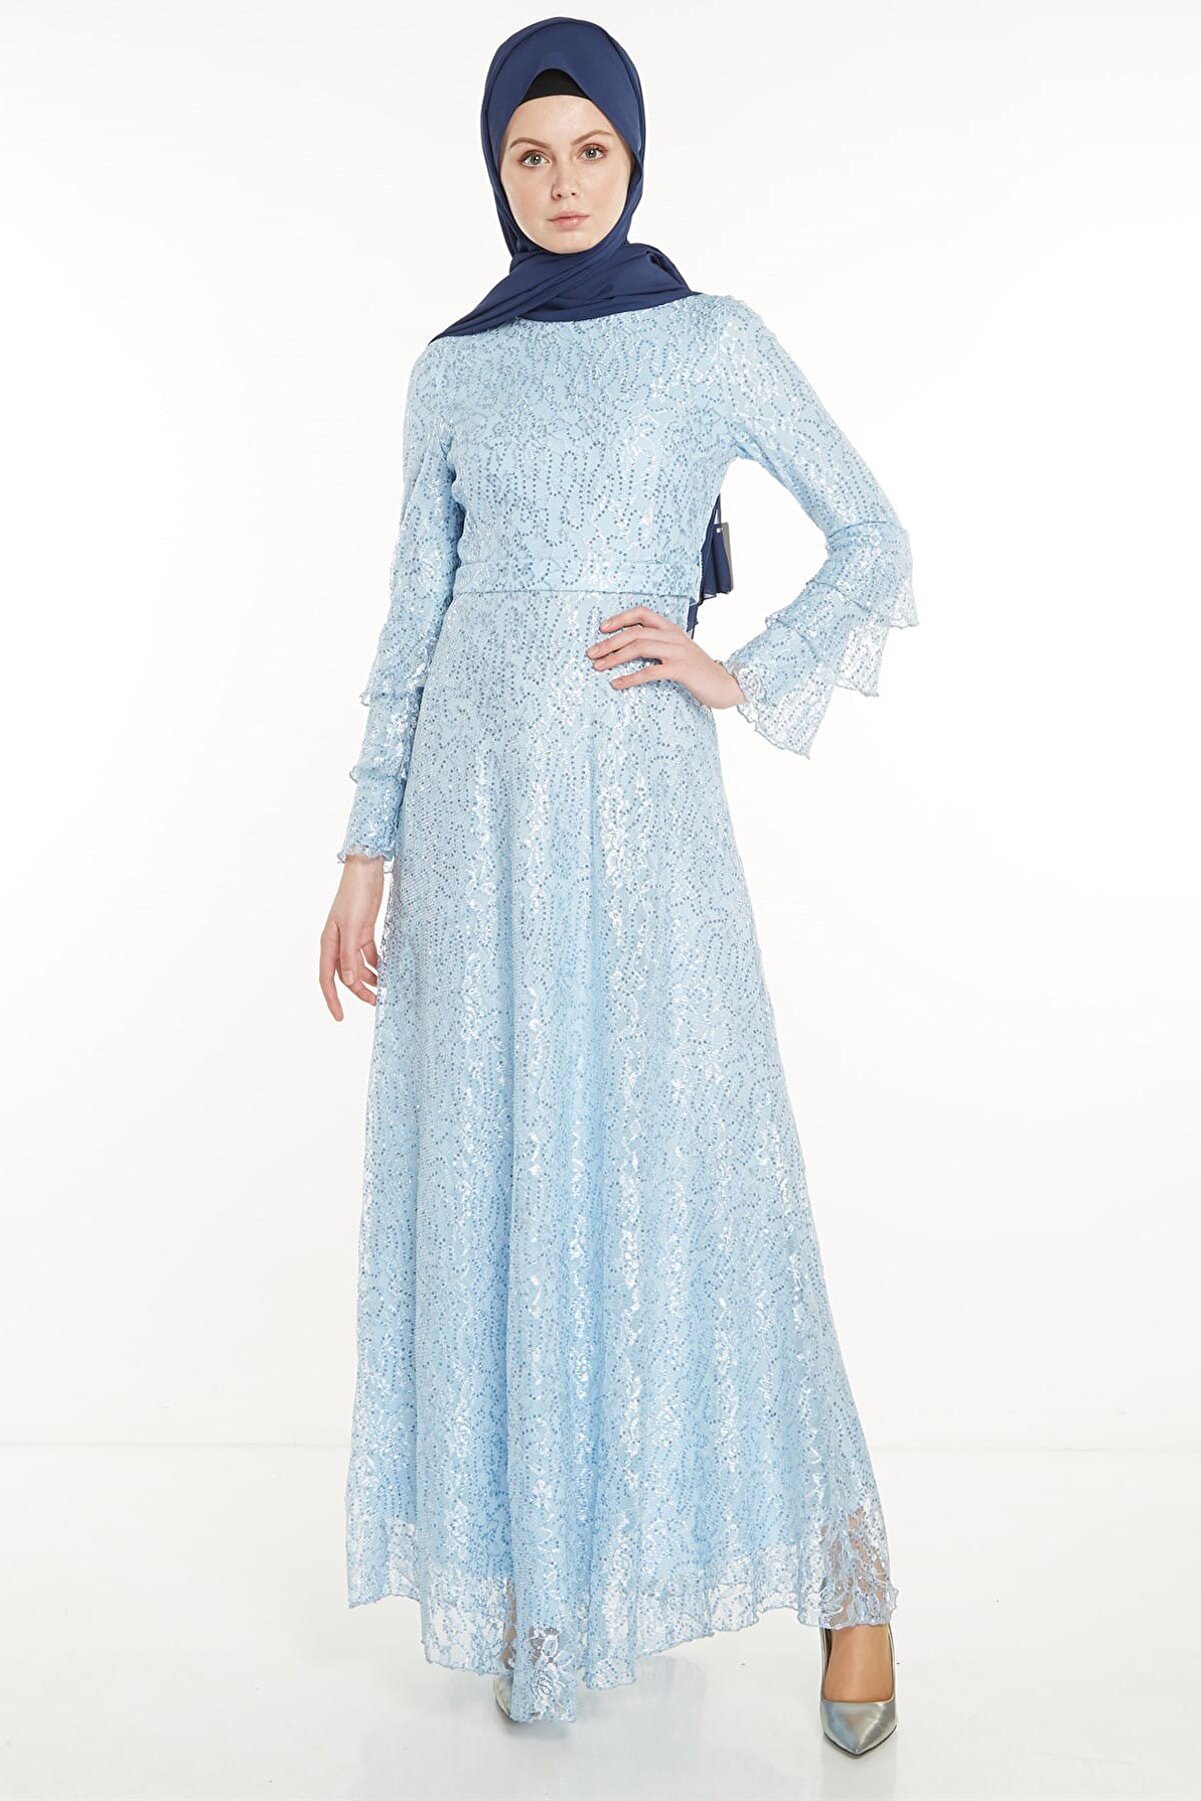 Nihan Kadın A.Mavi Kemerli Dantel Kumaş Abiye Elbise X5208